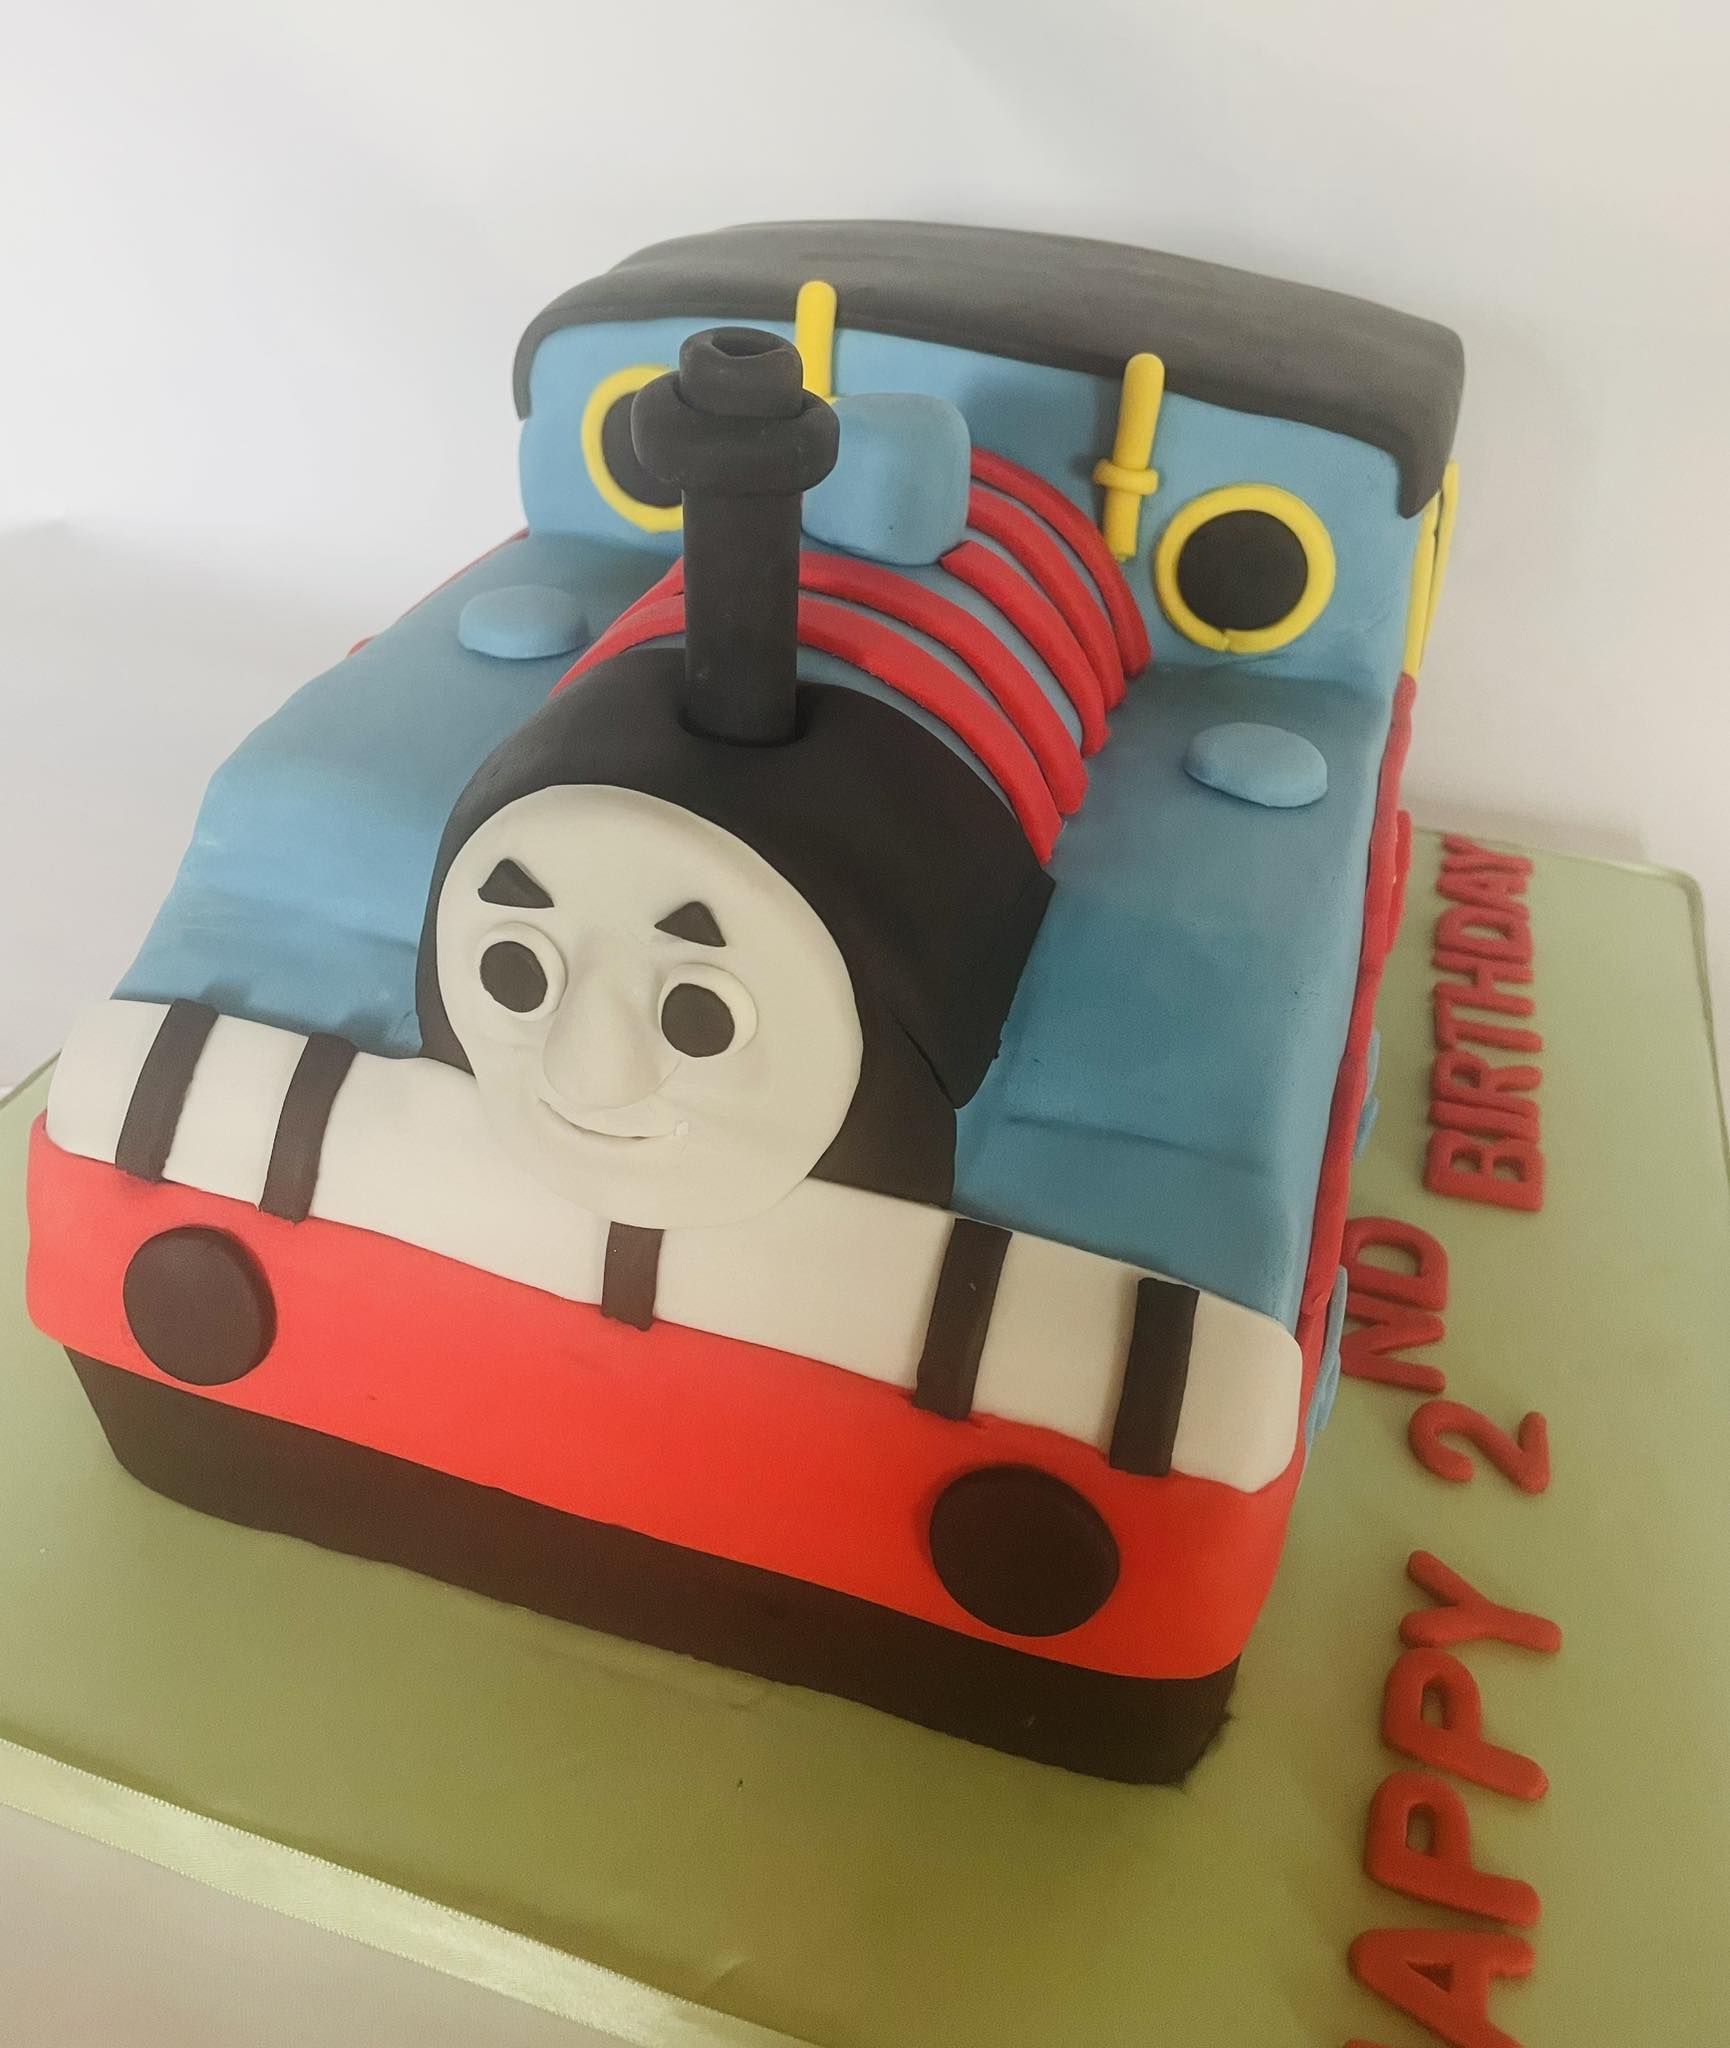 Thomas the tank engine birthday cake 